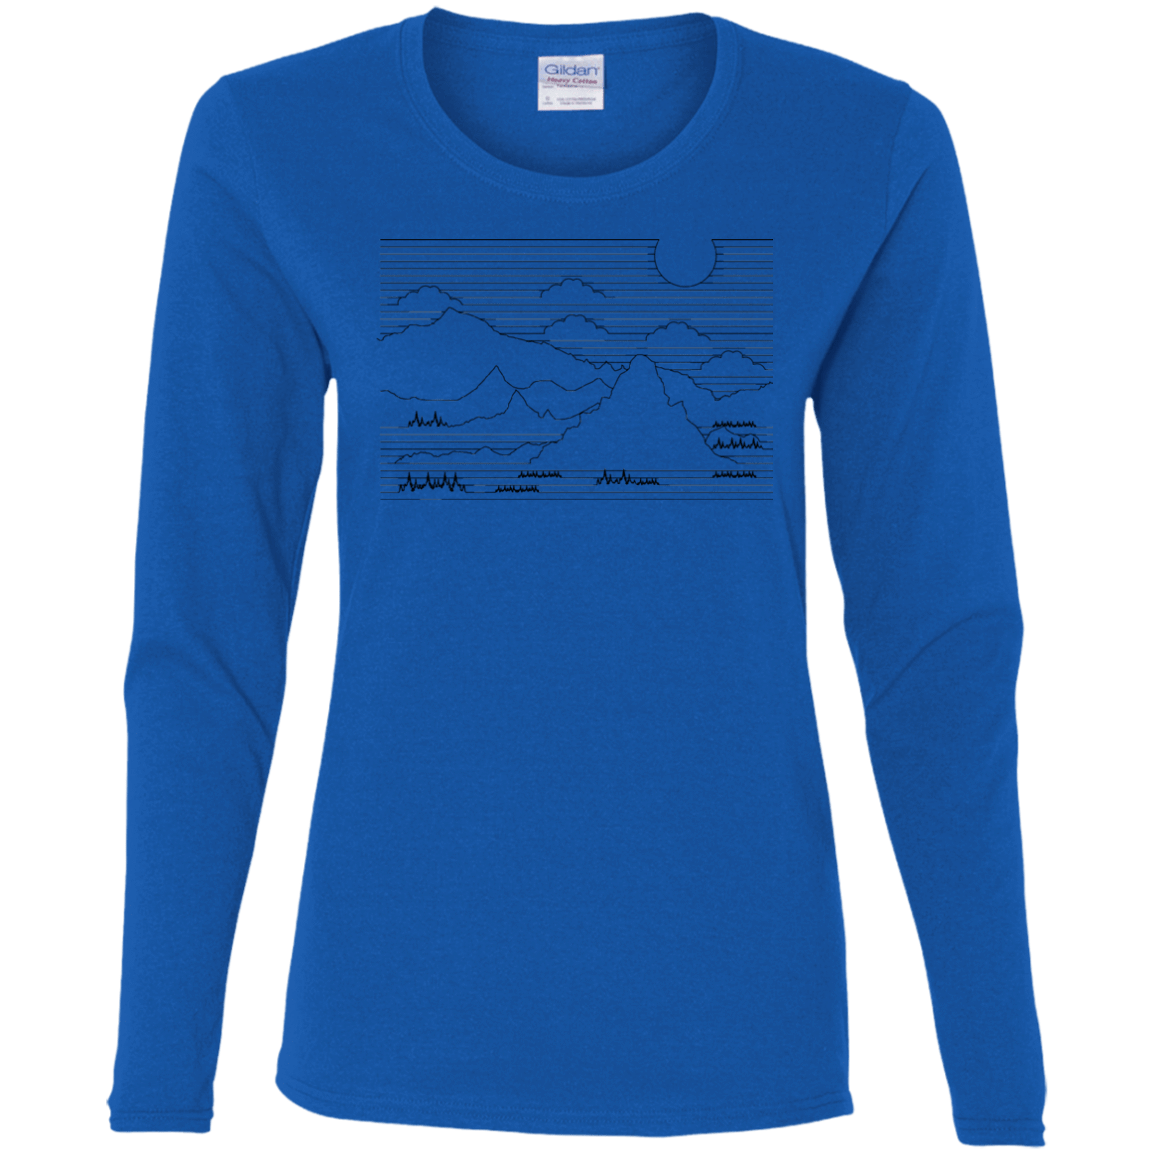 T-Shirts Royal / S Mountain Line Art Women's Long Sleeve T-Shirt